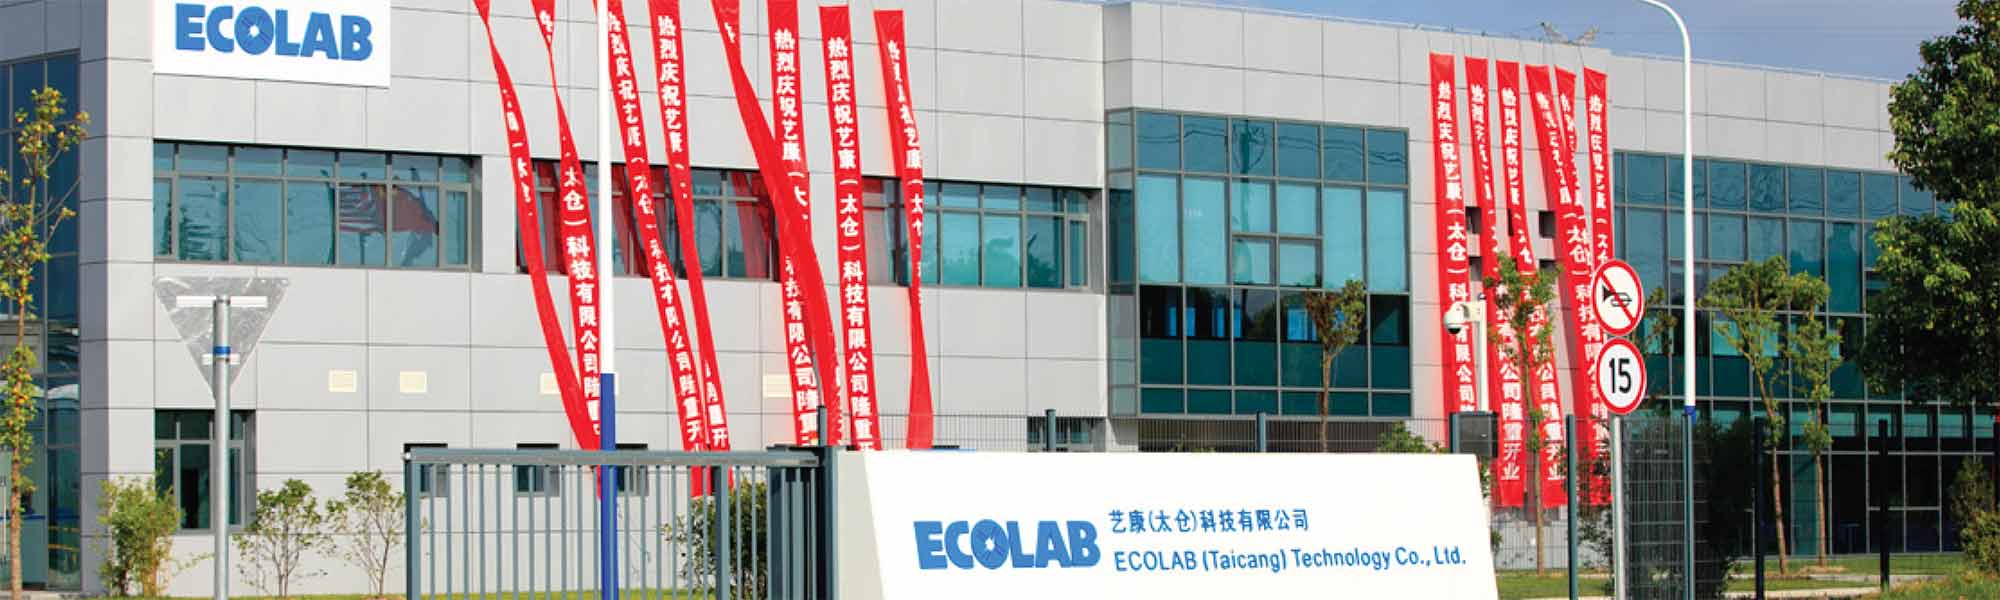 Ecolab-Werk im chinesischen Taicang als führende Wasserverwaltungsanlage zertifiziert